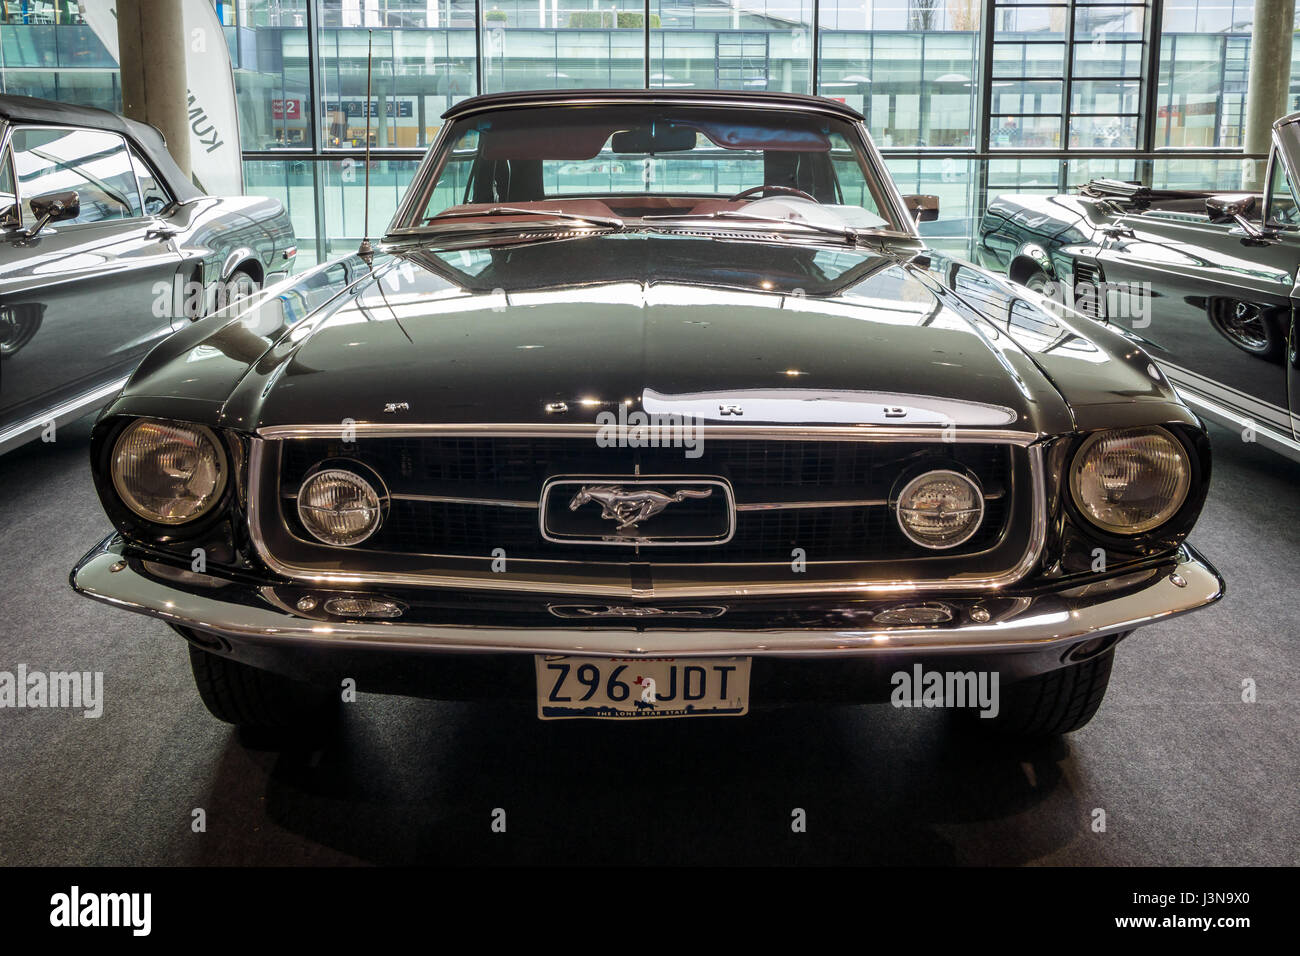 STUTTGART, ALLEMAGNE - Mars 03, 2017 : Pony car Ford Mustang décapotable 1967. Plus grand d'Europe Exposition de voitures classiques 'RETRO' classiques Banque D'Images